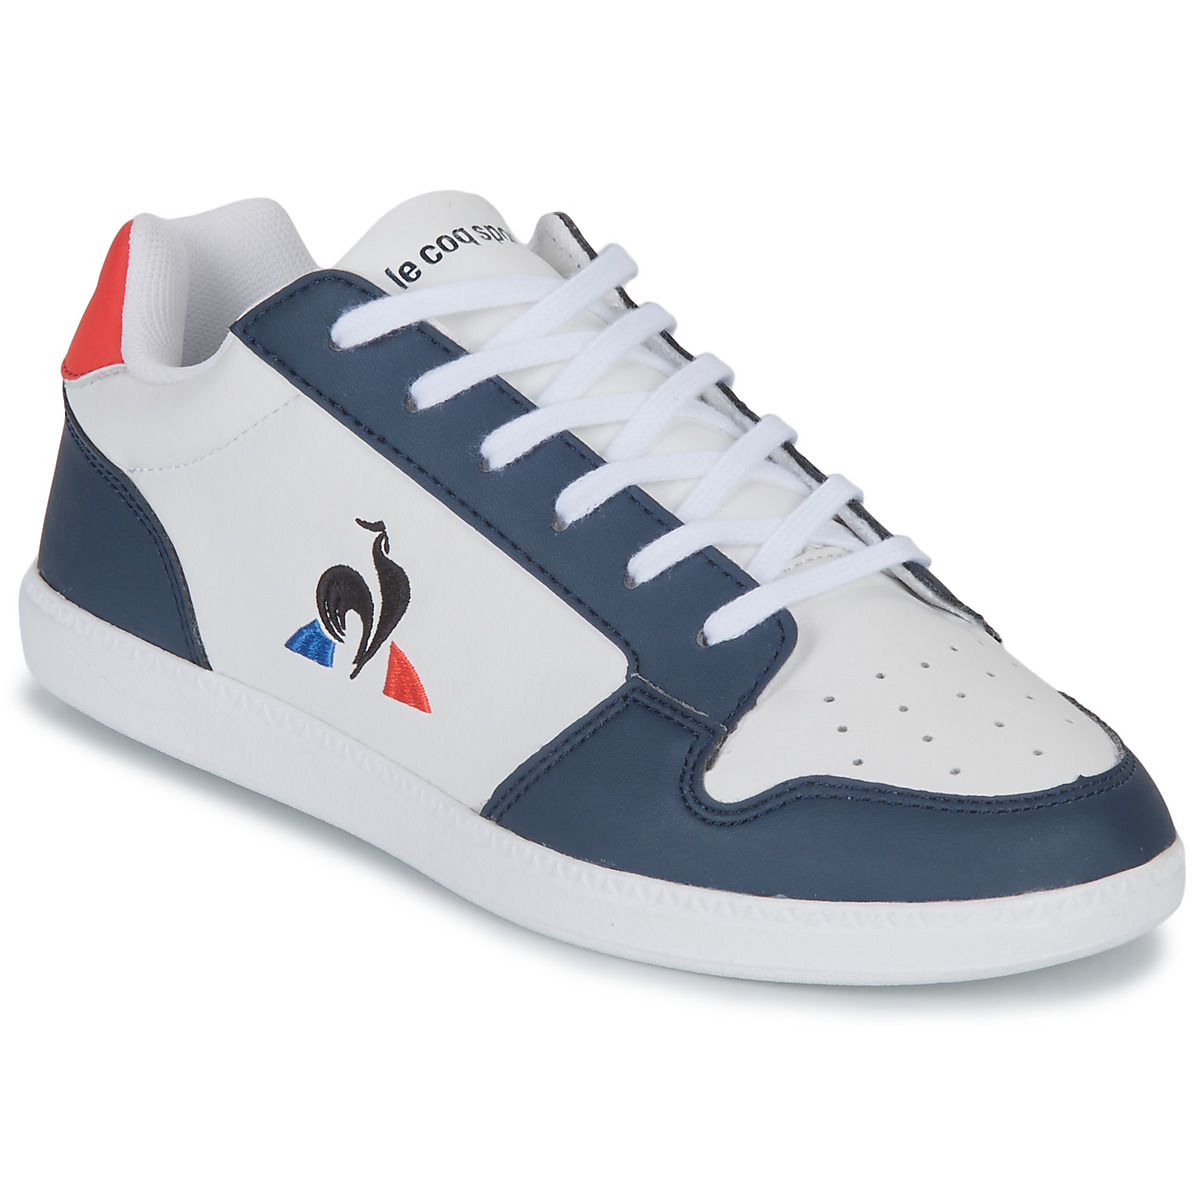 Nike AIR JORDAN 1 LOW GS Bianco - Scarpe Sneakers basse Bambino 214,95 €